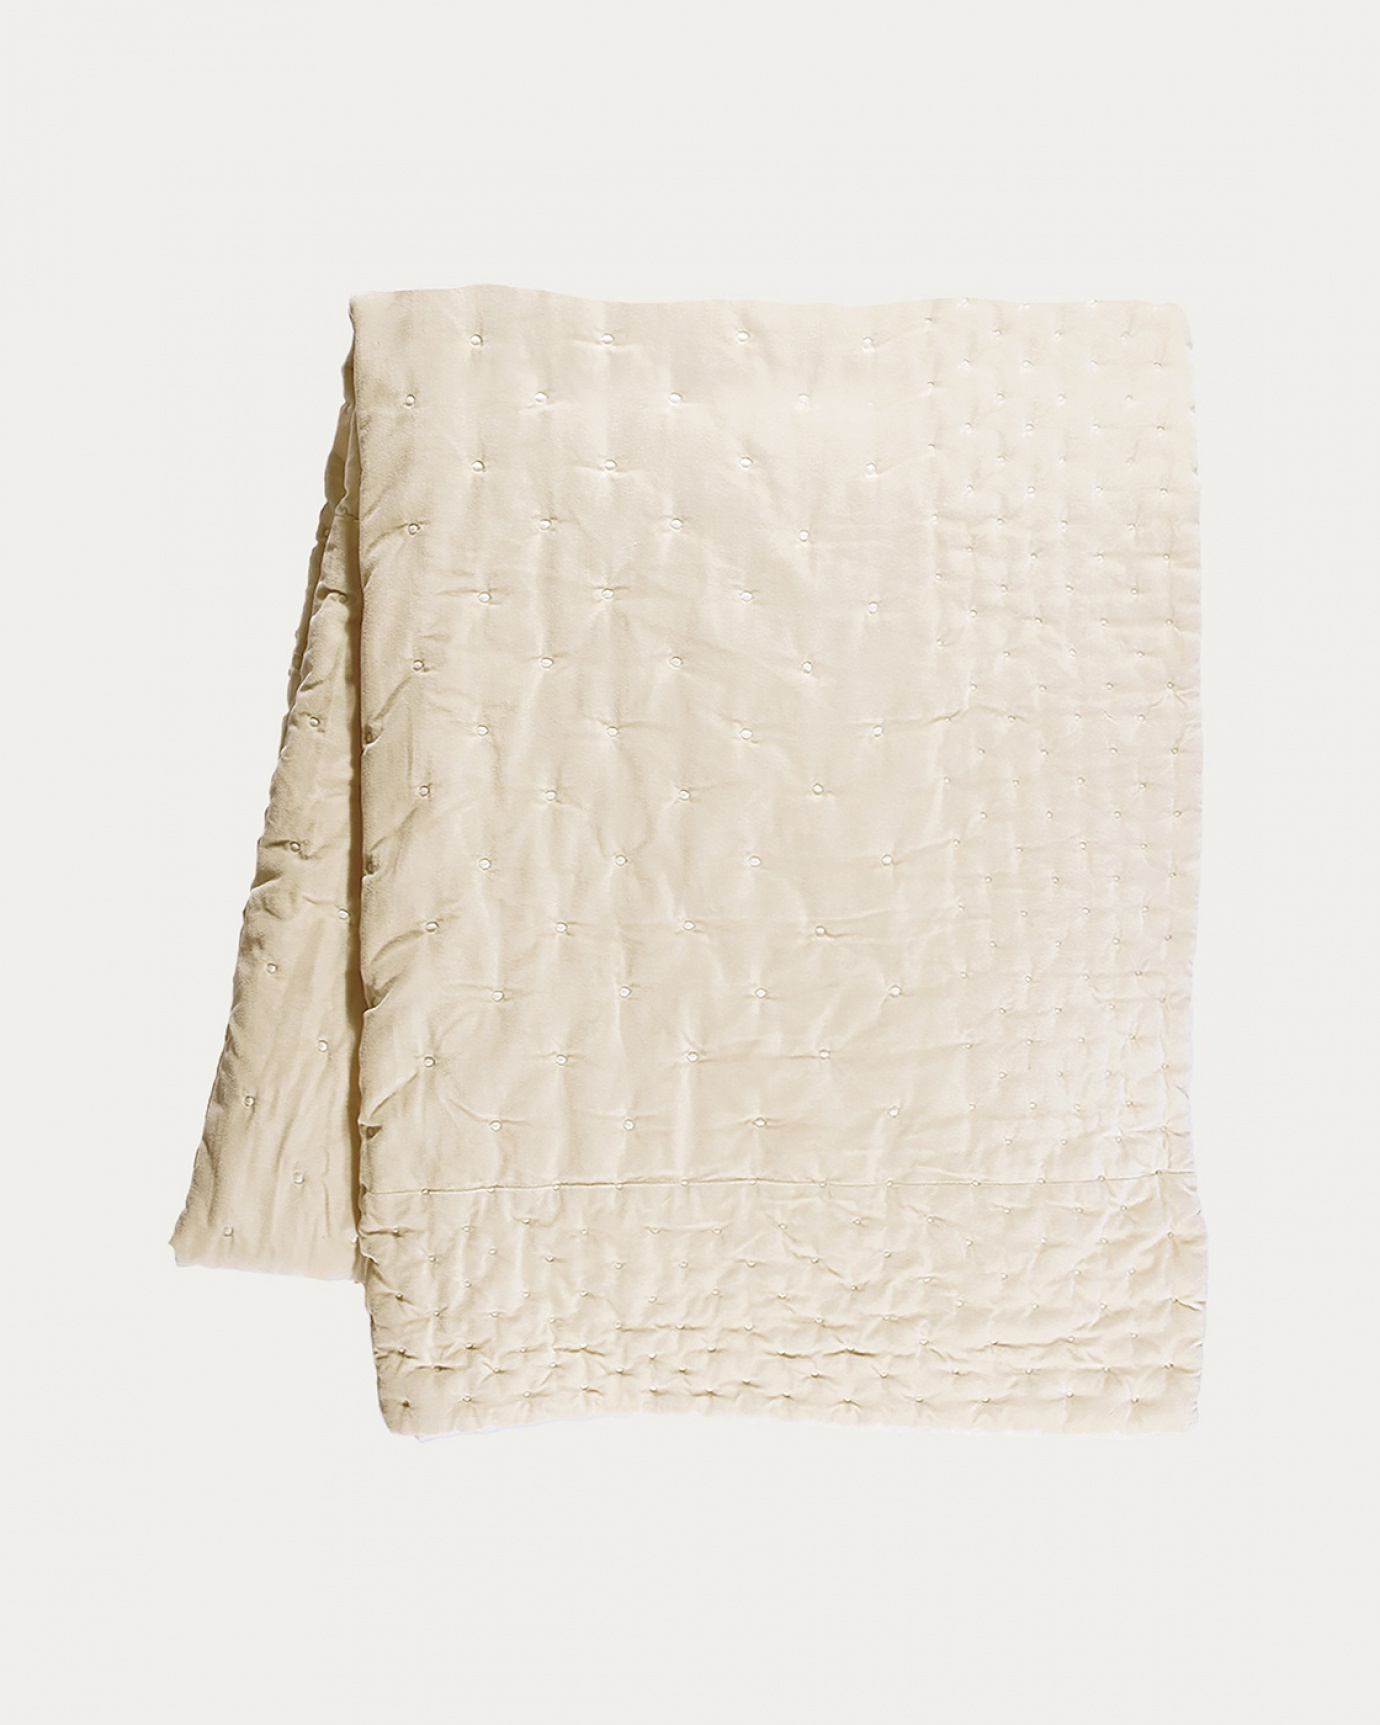 Produktbild cremebeige Tagesdecke PAOLO aus weichem Baumwollsamt für Doppelbett von LINUM DESIGN. Größe 270x260 cm.